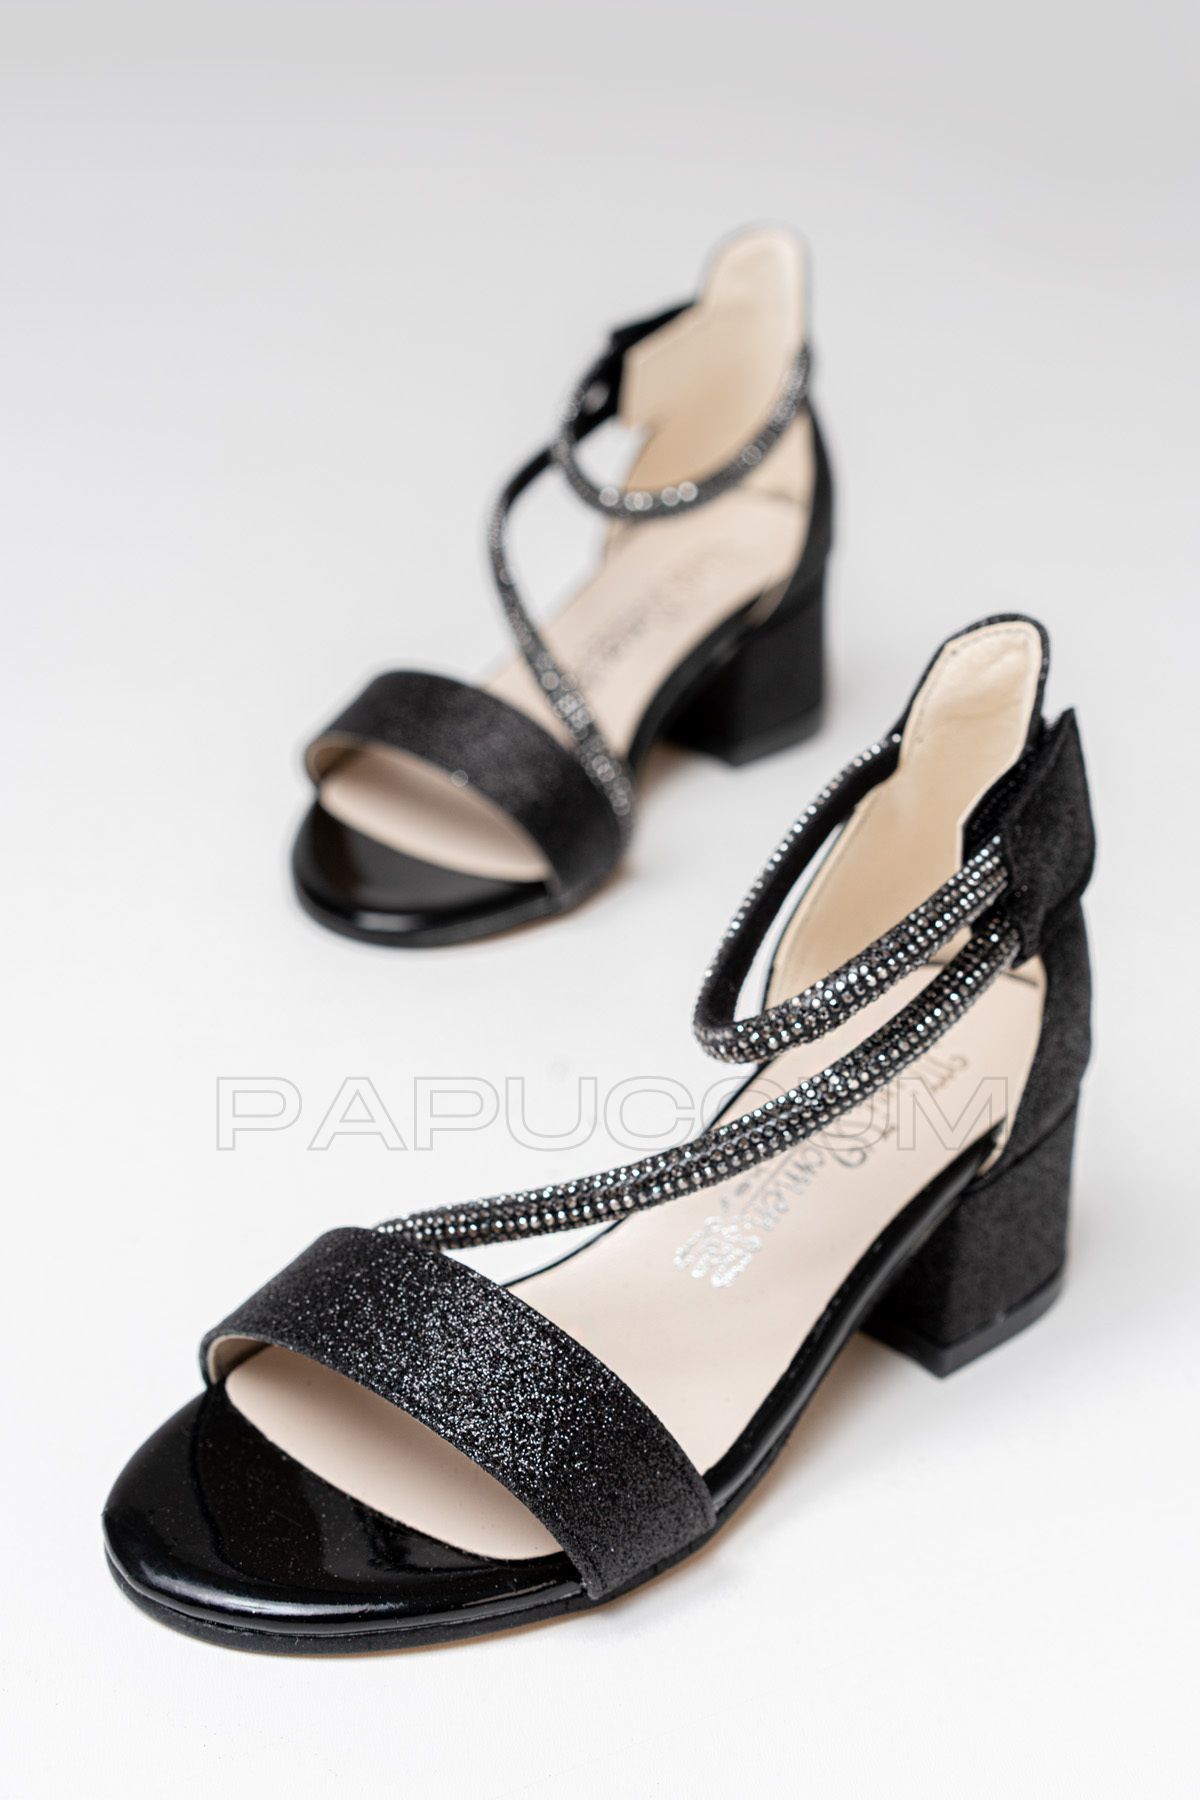 p papuccum ortopedi çocuk ayakkabıları Kız Çocuk Siyah Cırtlı Taşlı Rahat Abiye Ayakkabı